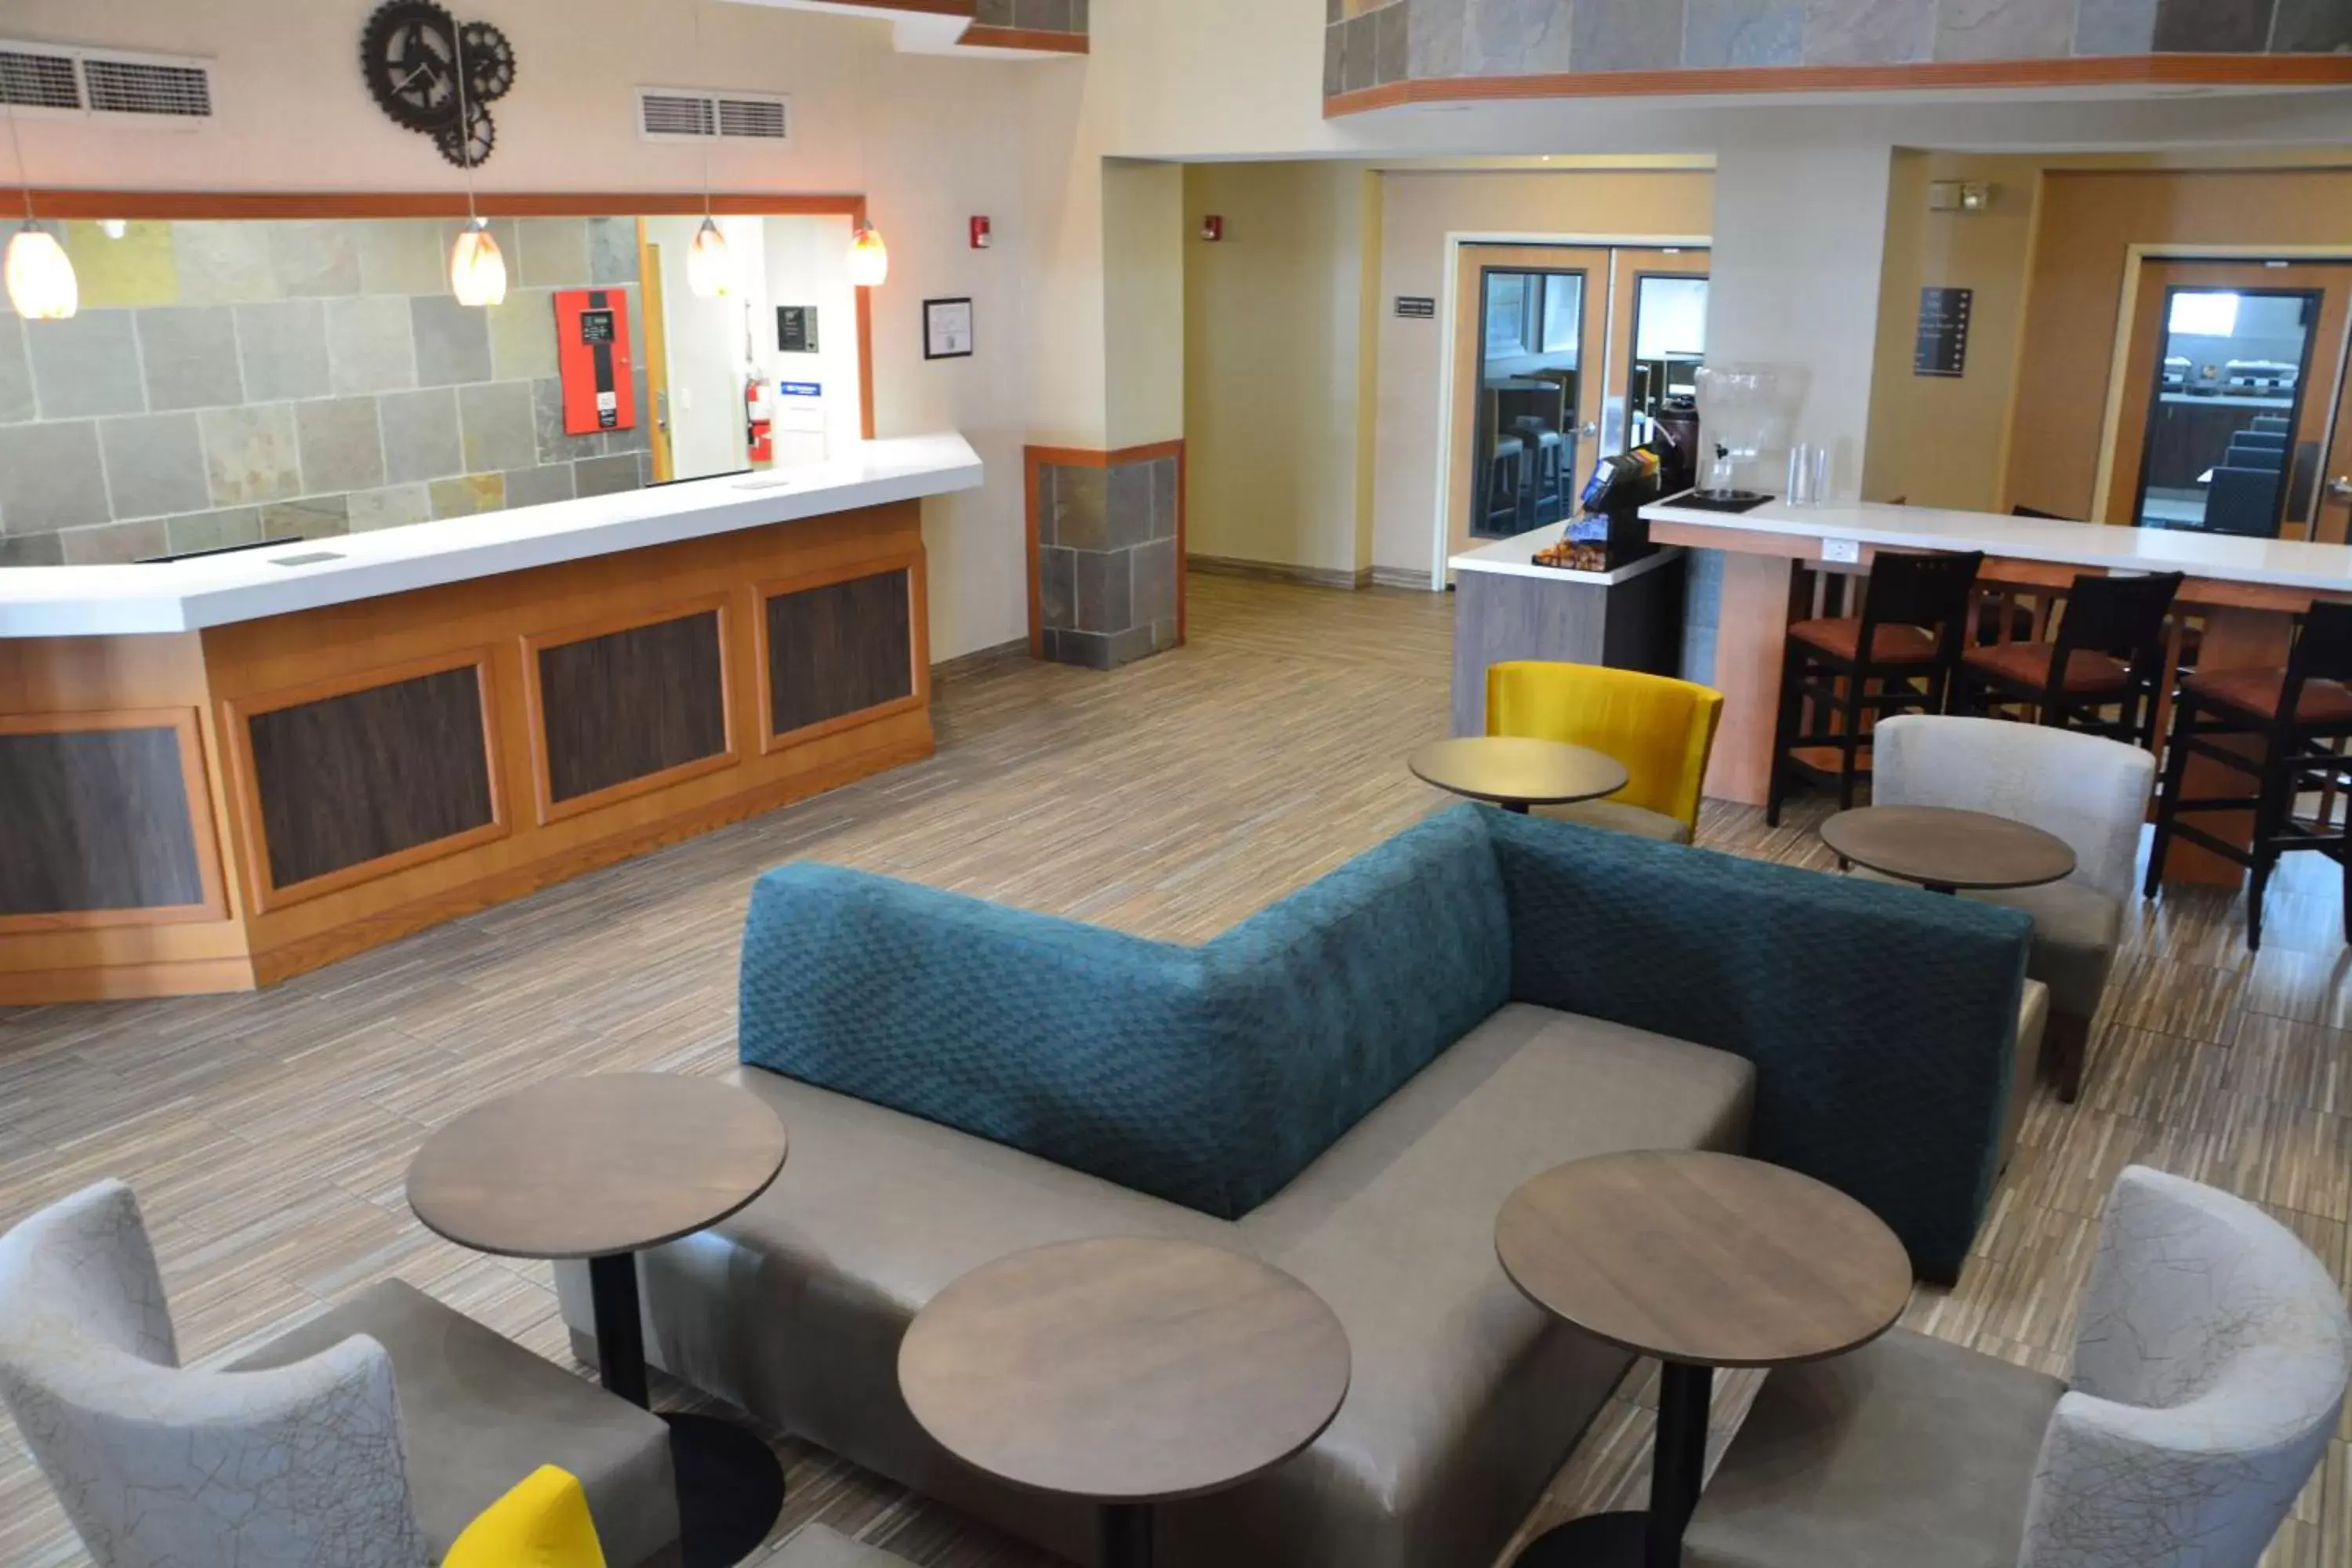 Lobby or reception, Lobby/Reception in Best Western Plus Gateway Inn & Suites - Aurora